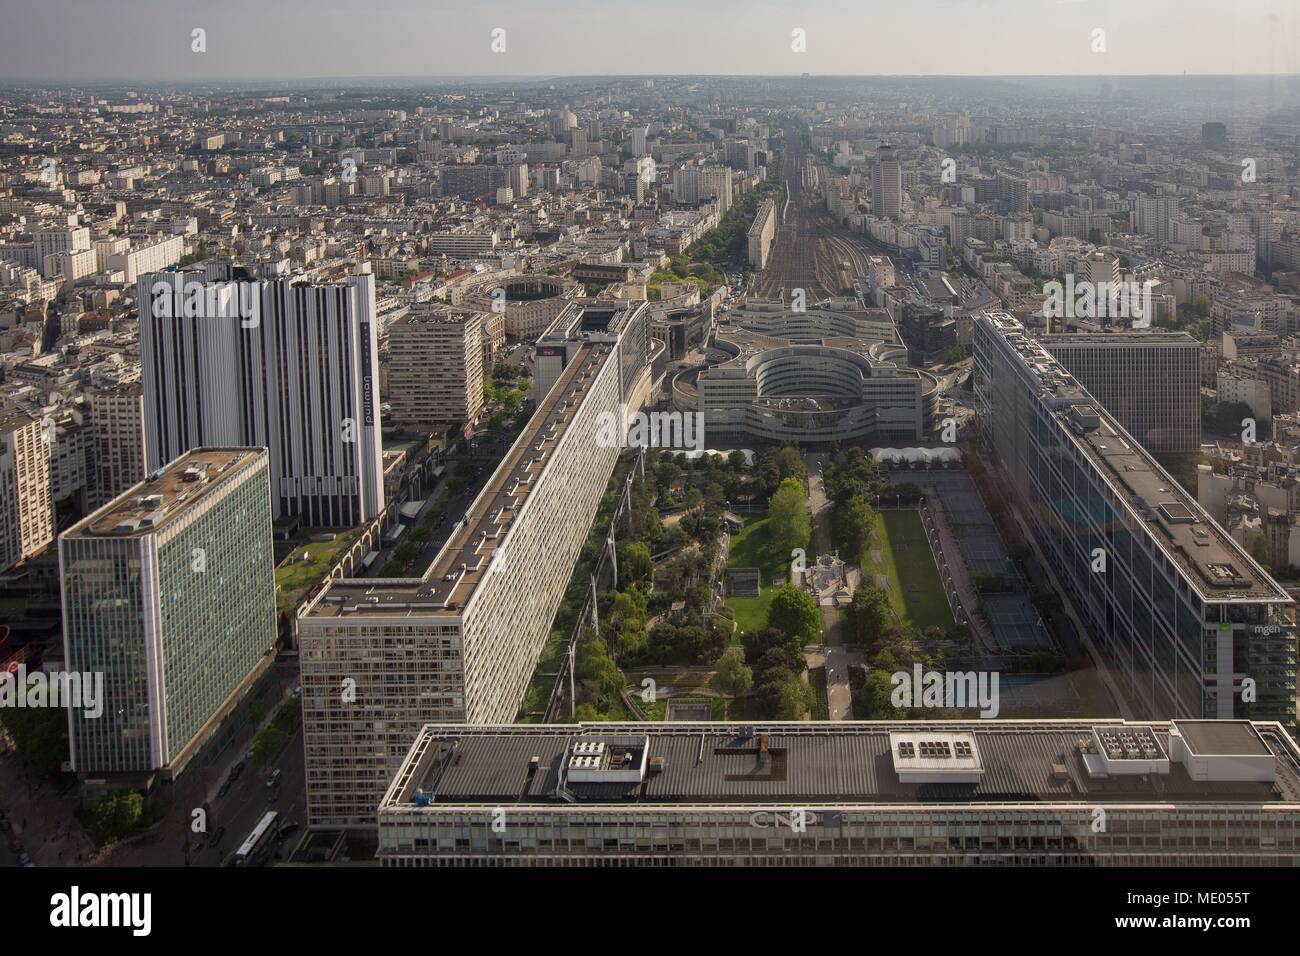 https://c8.alamy.com/compes/me055t/vista-aerea-de-paris-desde-el-piso-56-de-la-torre-montparnasse-el-jardin-atlantique-lignes-de-chemin-de-fer-de-la-gare-montparnasse-me055t.jpg